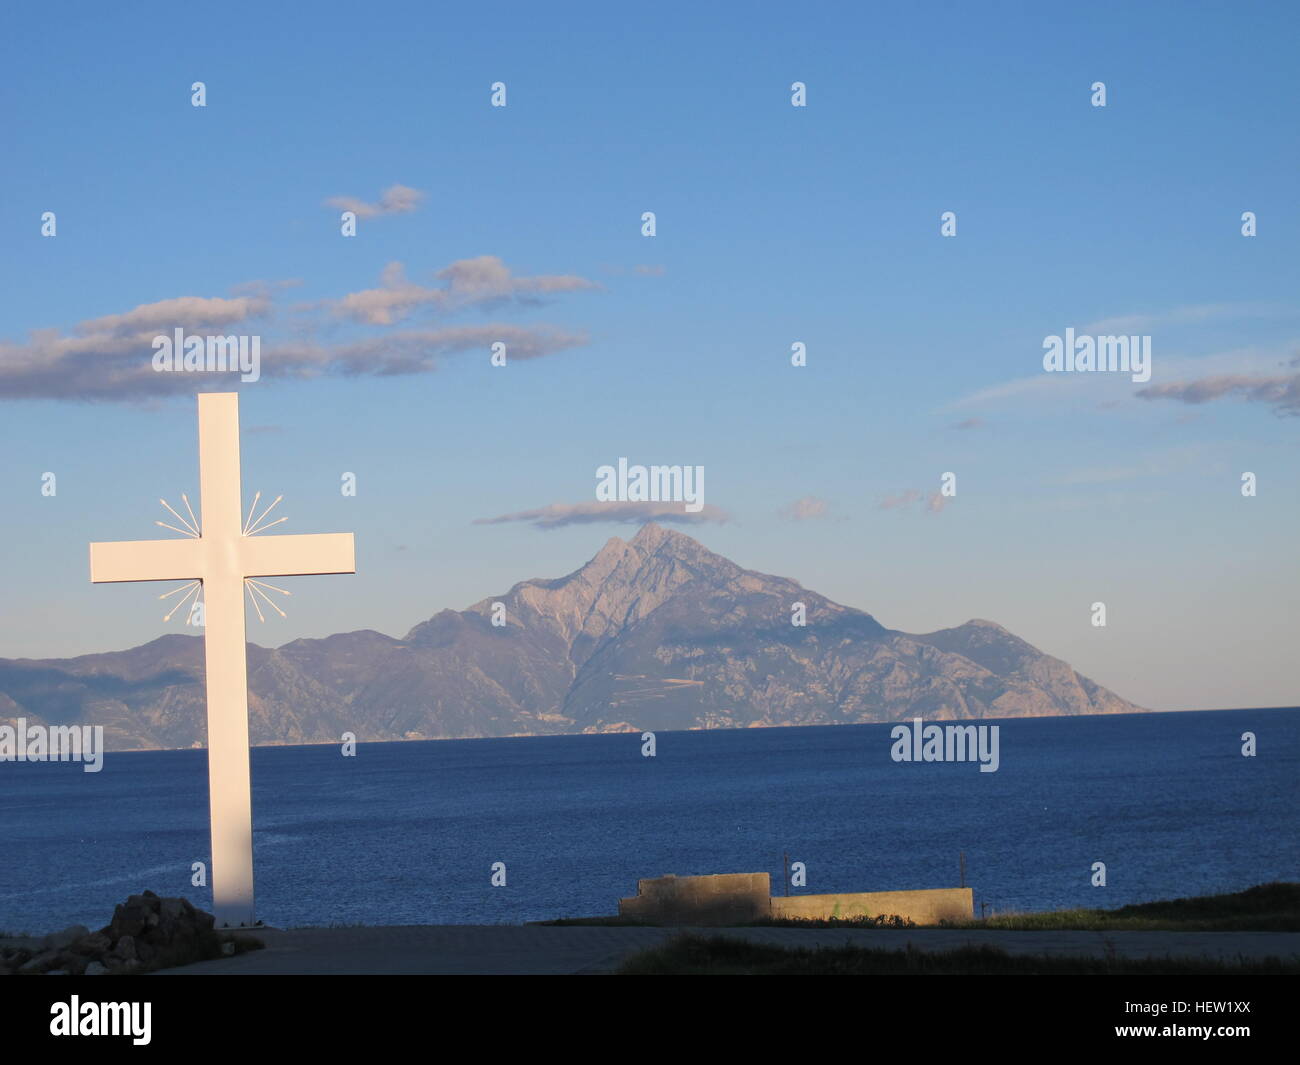 Greece central Macedonia Chalkidiki Khalkidhiki Aegean Sea Mount Athos Holy Mountain cross Stock Photo